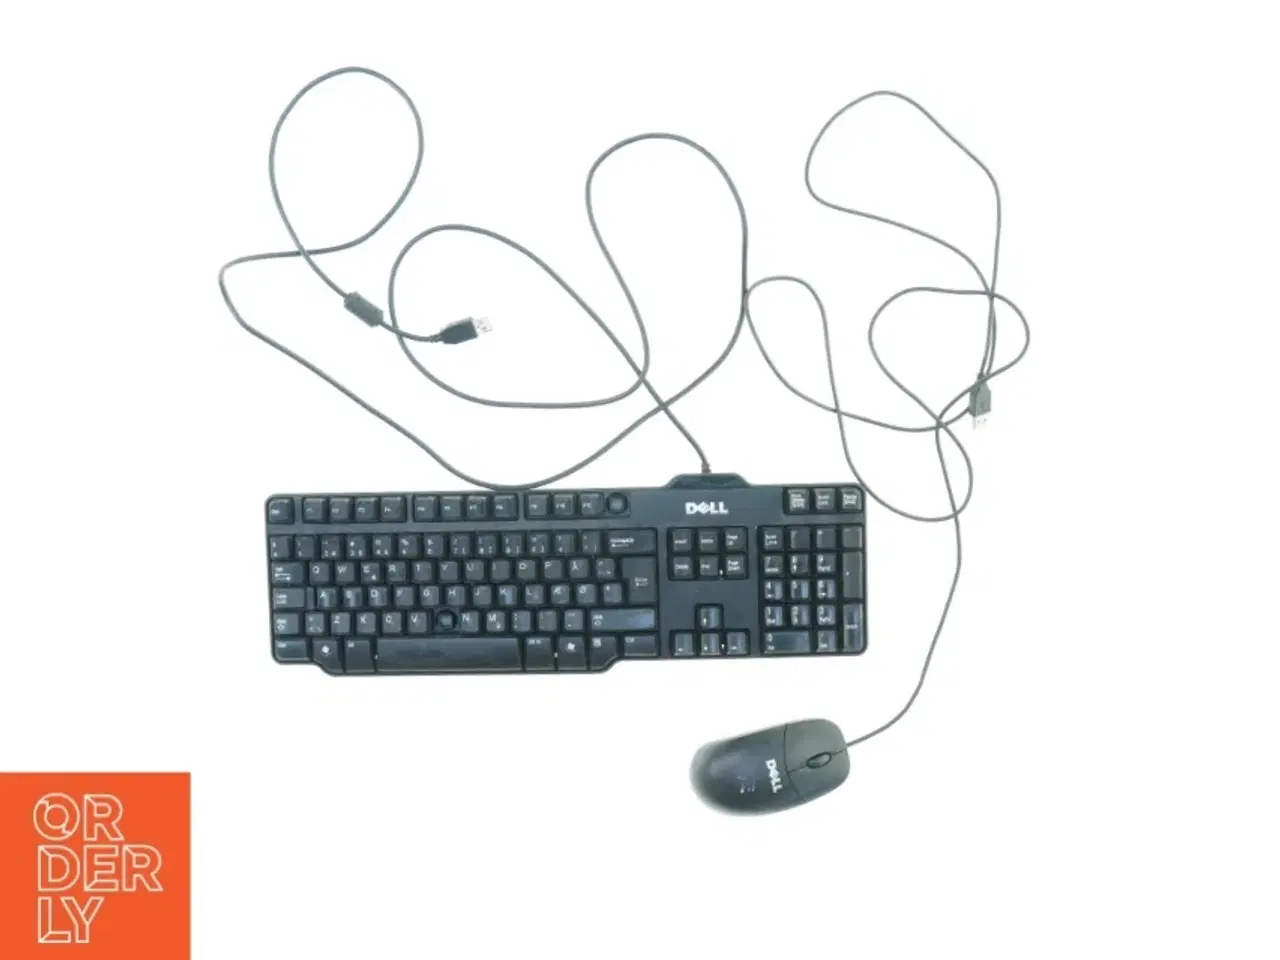 Billede 1 - Keyboard og mus fra Dell (str. 44 x 13 cm 12 x 6 cm)